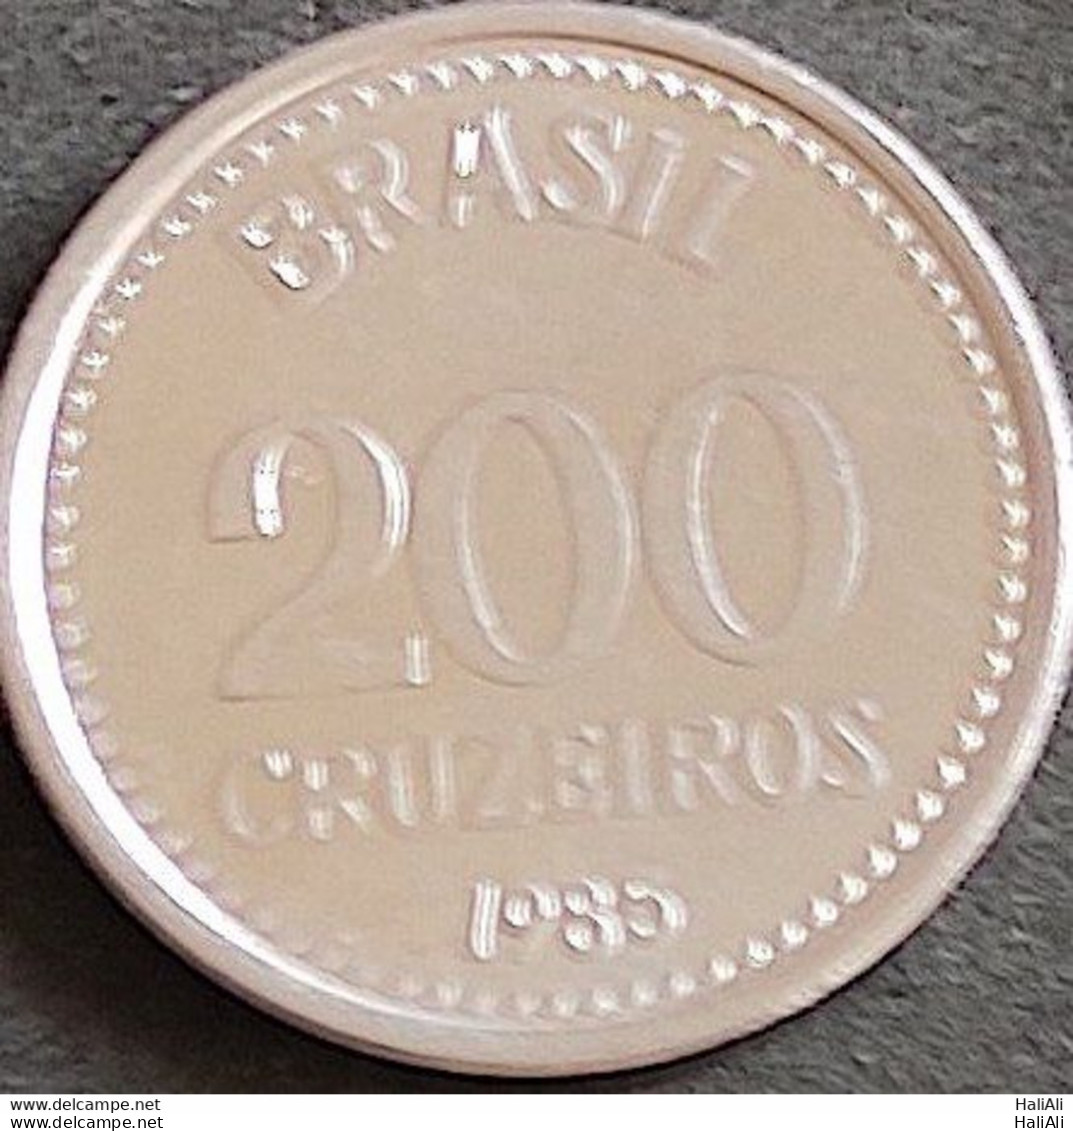 Coin Brazil Moeda Brasil 1985 200 Cruzeiros 1 - Brasilien